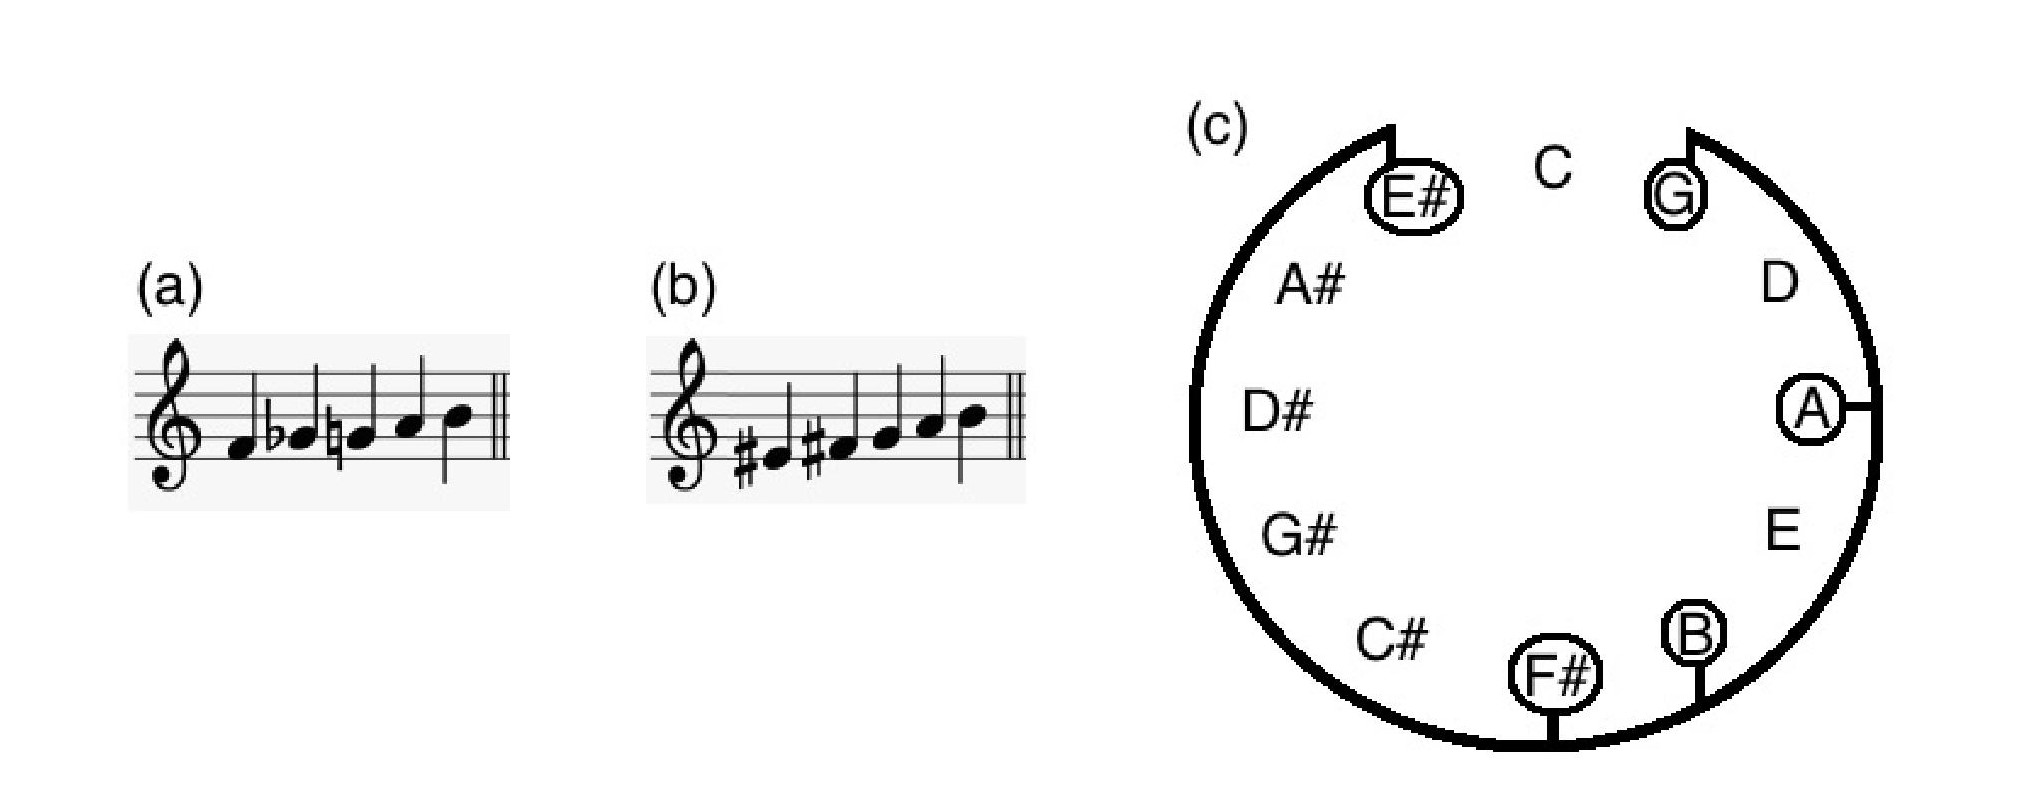 Fig. 9: (a) Representação escalar das notas constituintes do c. 1 do Op. 11, nº 1 de Schoenberg; 

(b) representação escalar enarmonizada das mesmas notas; (c) representação destas no ciclo de quintas.